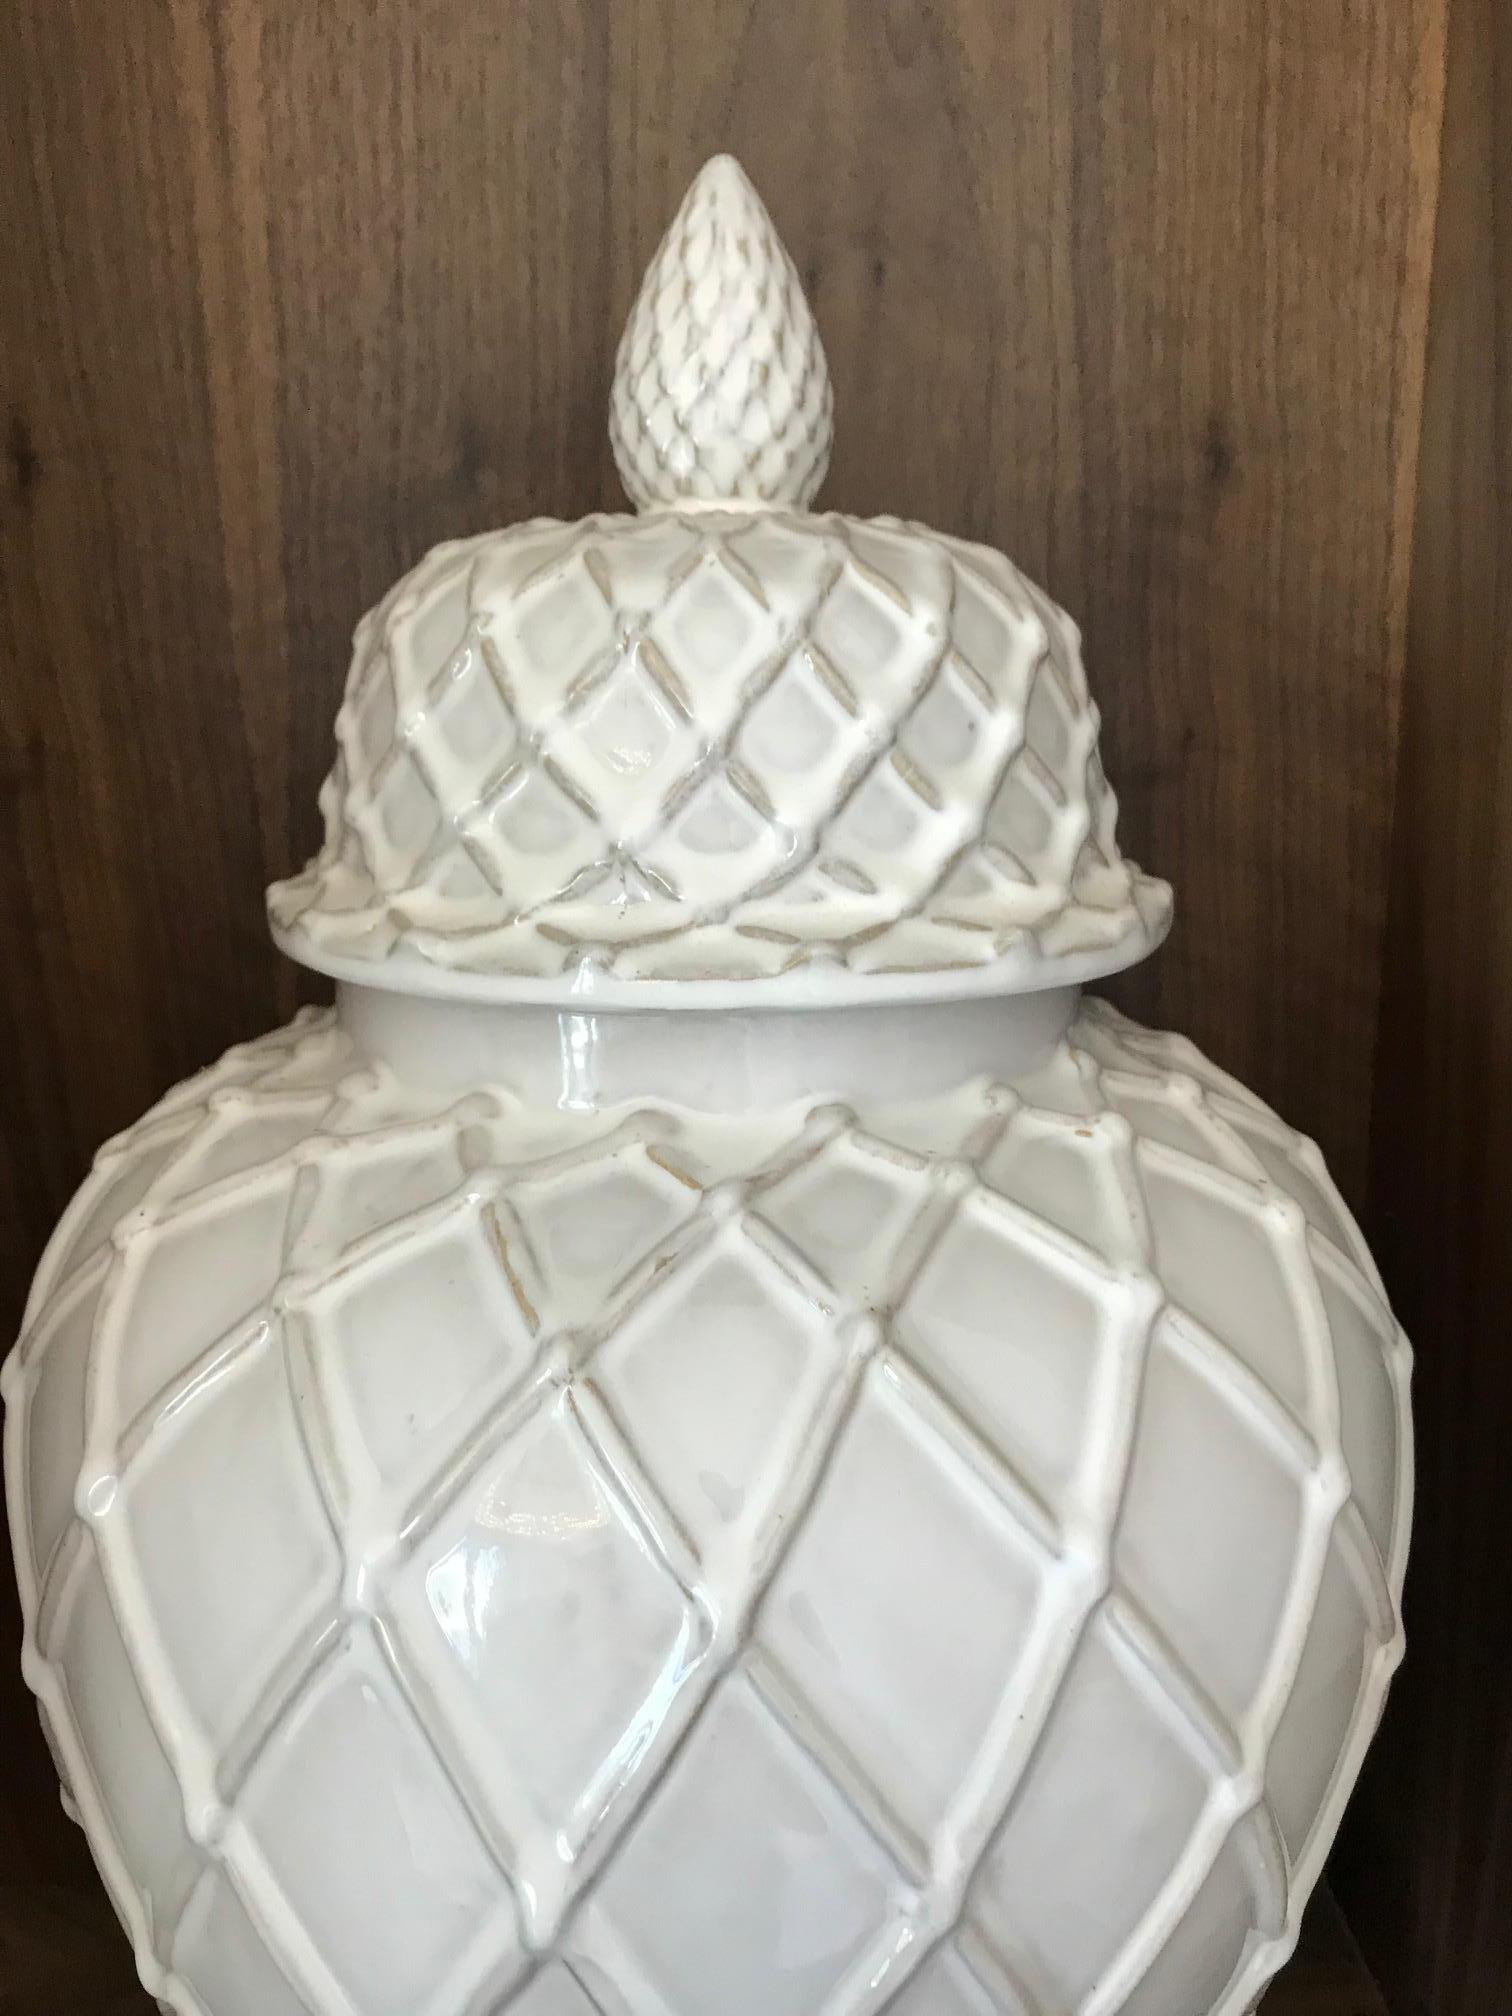 Italian Exquisite White Ceramic Lidded Urn Vase with Lattice Design, Italy